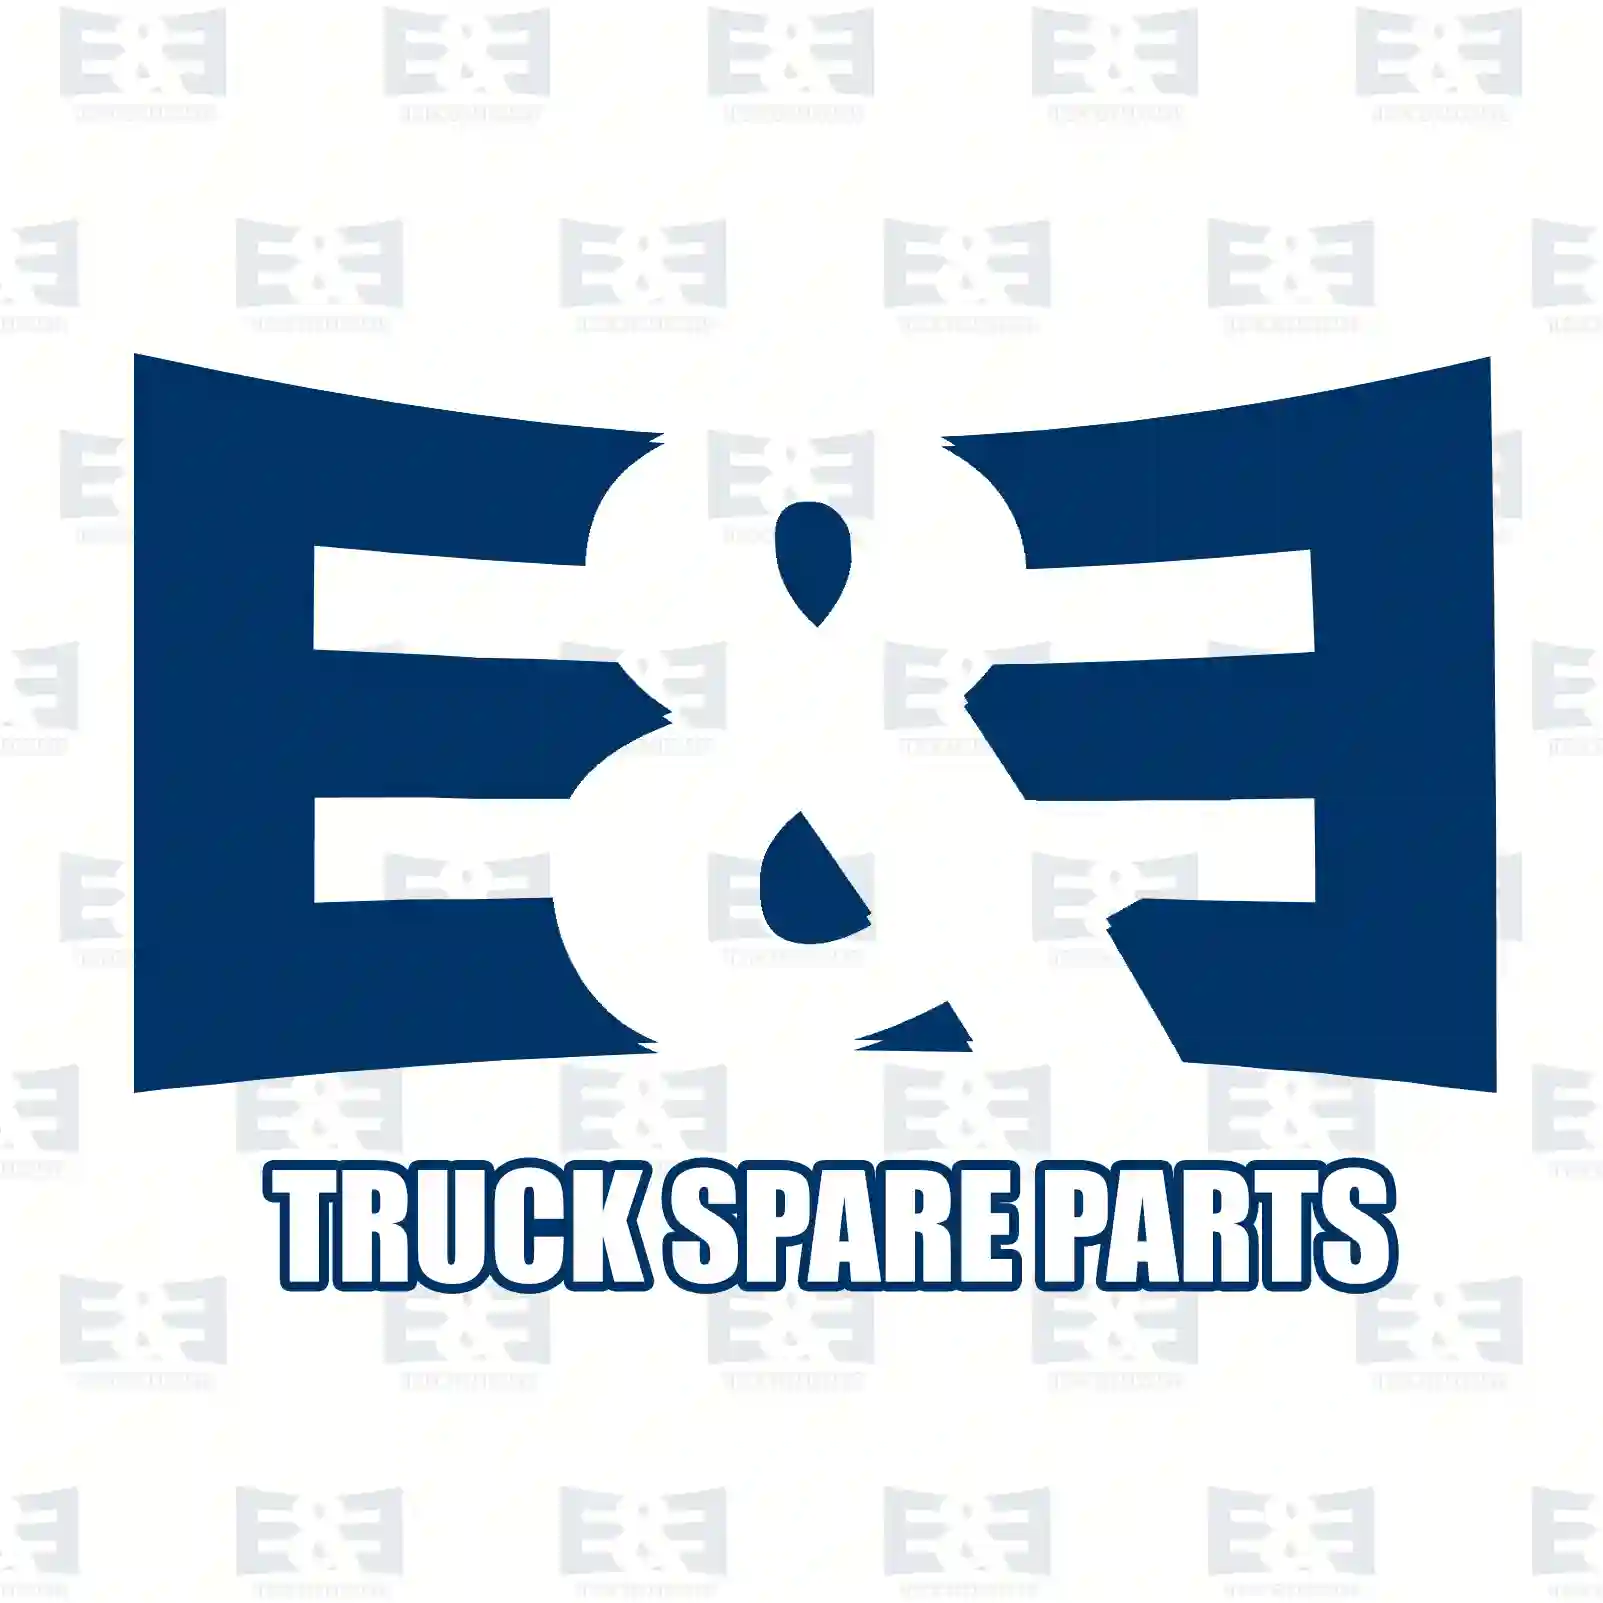 King pin kit, double kit, 2E2279978, 0683499, 683499, ZG41291-0008, ||  2E2279978 E&E Truck Spare Parts | Truck Spare Parts, Auotomotive Spare Parts King pin kit, double kit, 2E2279978, 0683499, 683499, ZG41291-0008, ||  2E2279978 E&E Truck Spare Parts | Truck Spare Parts, Auotomotive Spare Parts